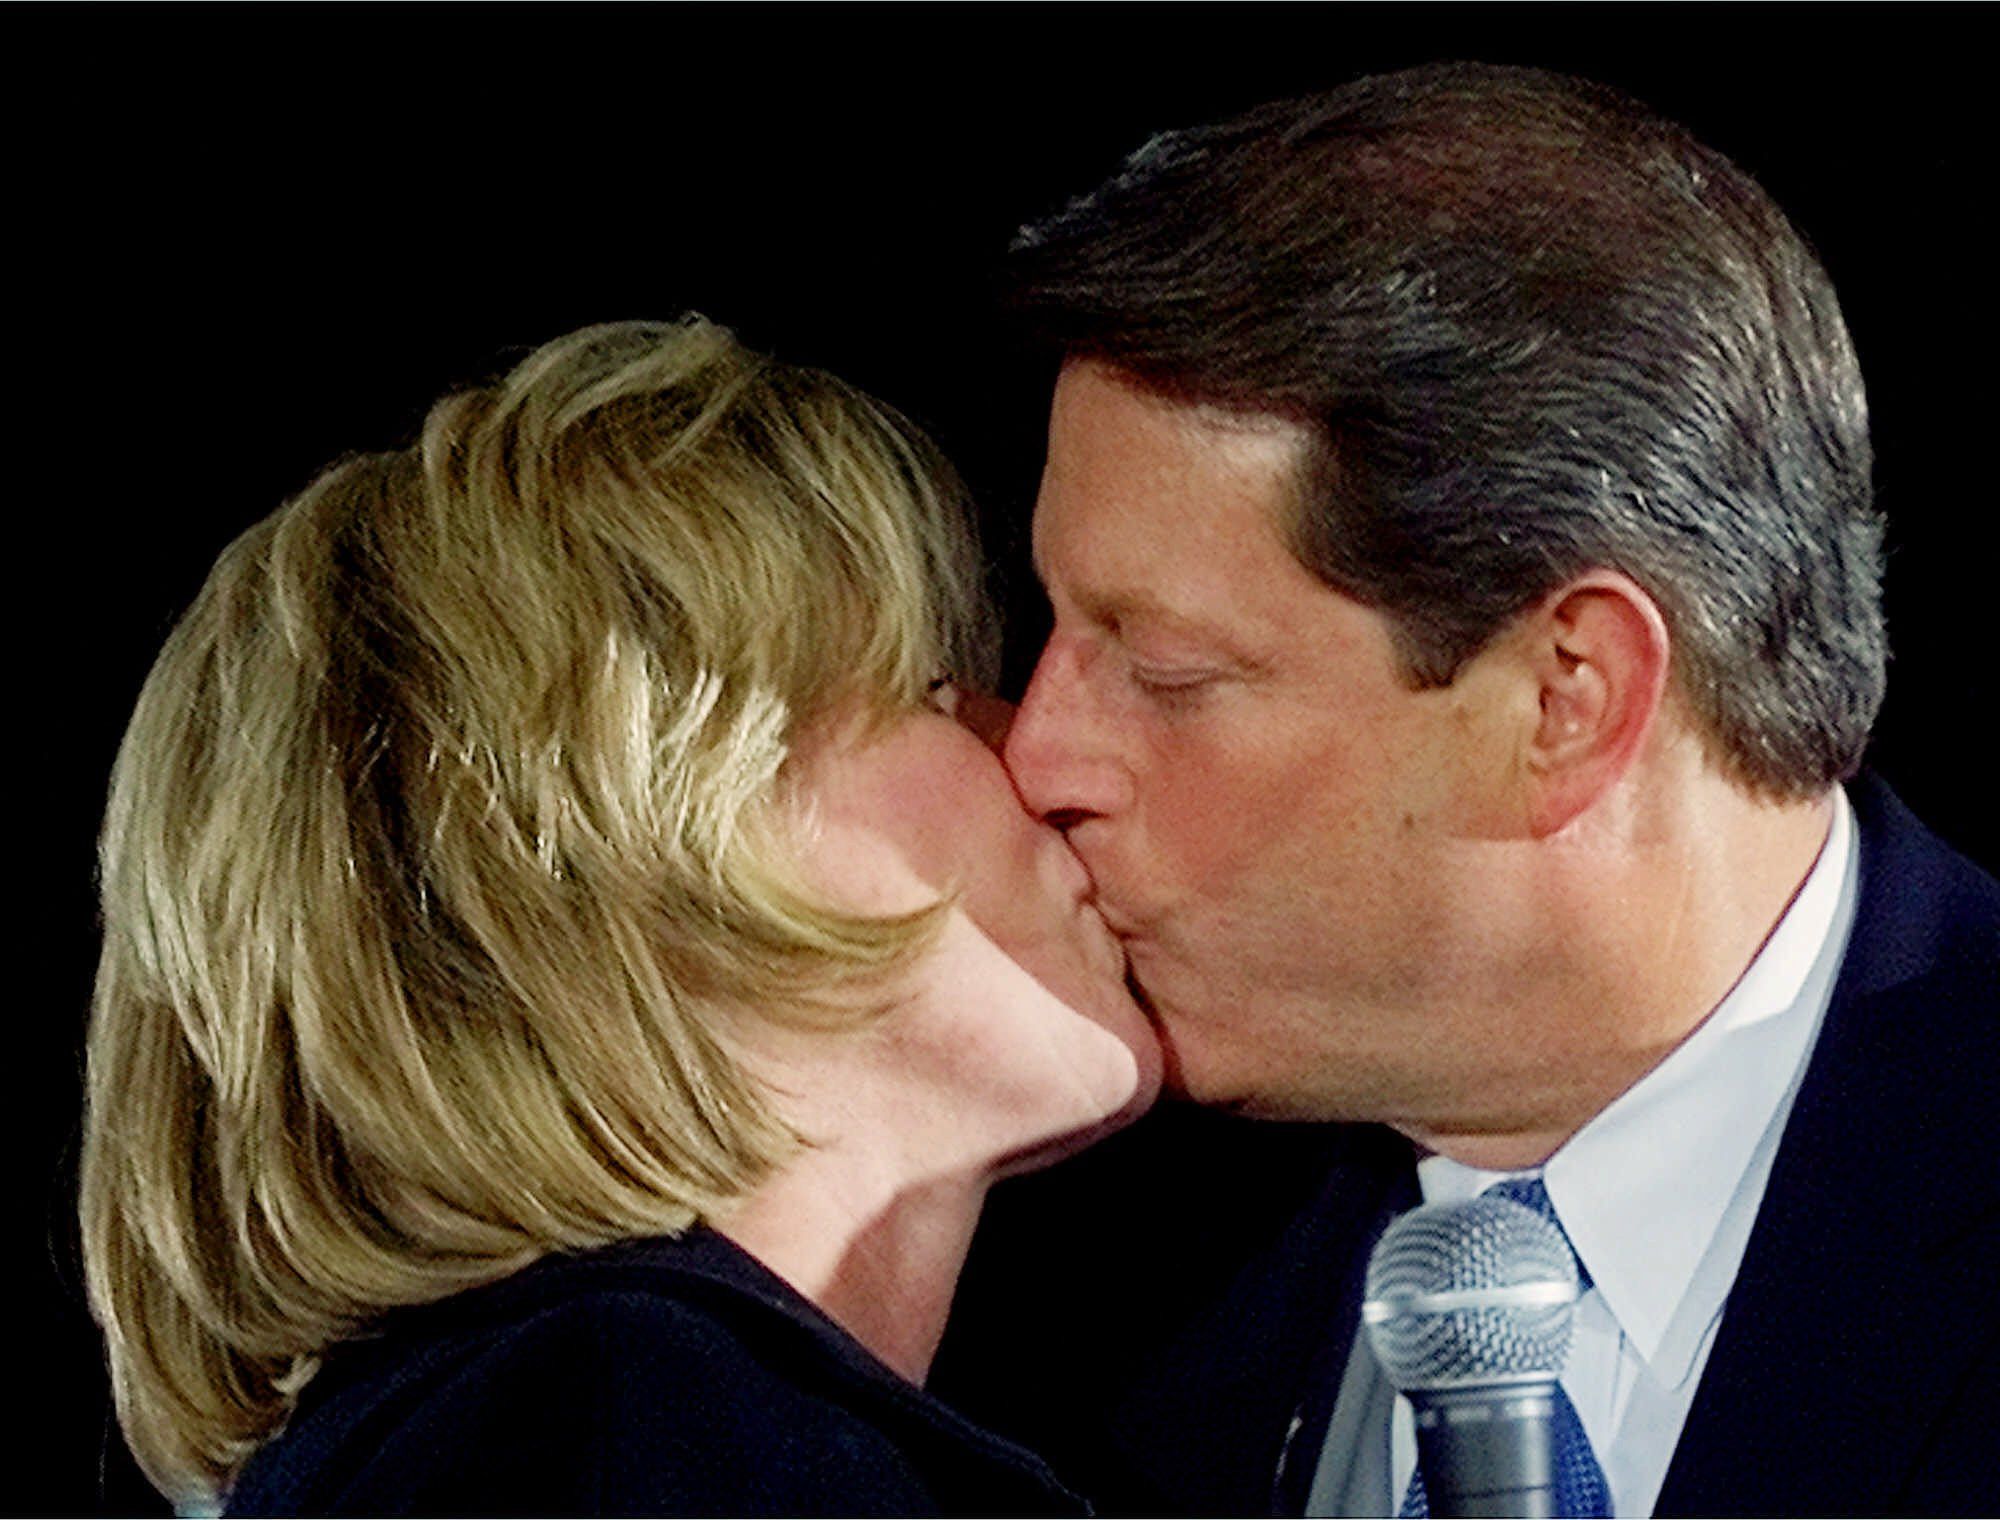 al and tipper kissing close up